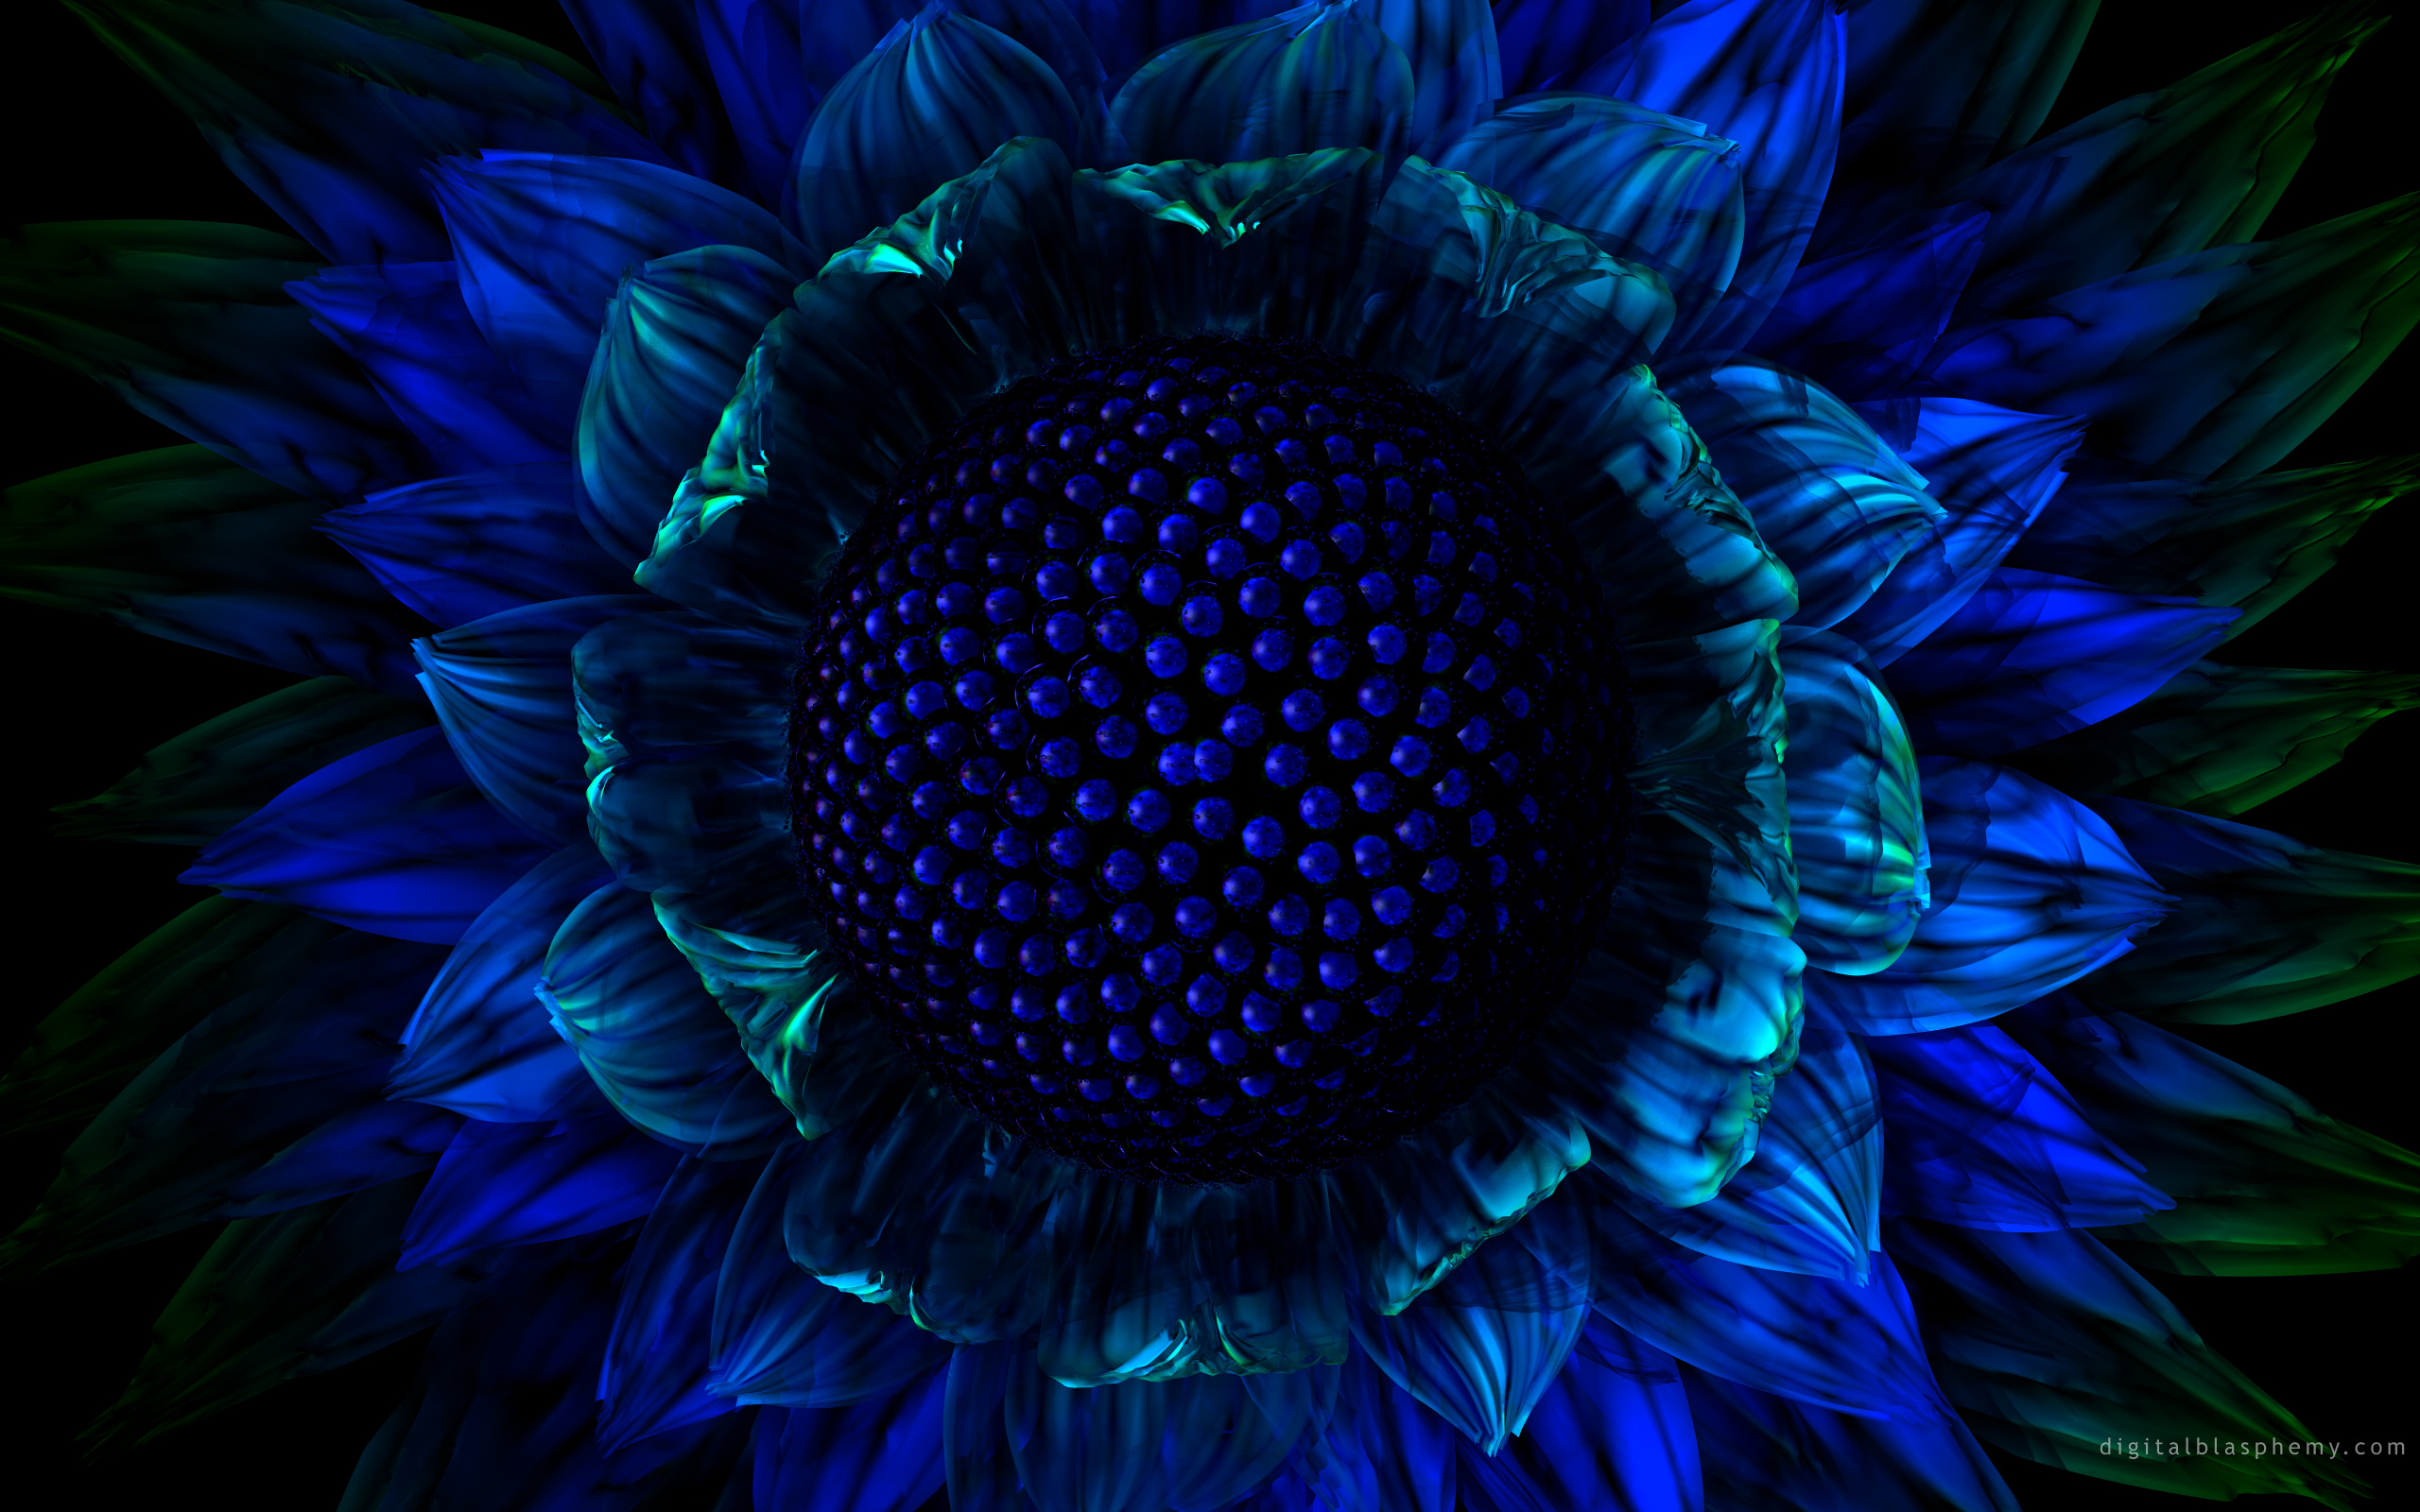 Sunflower Wallpaper Desktop